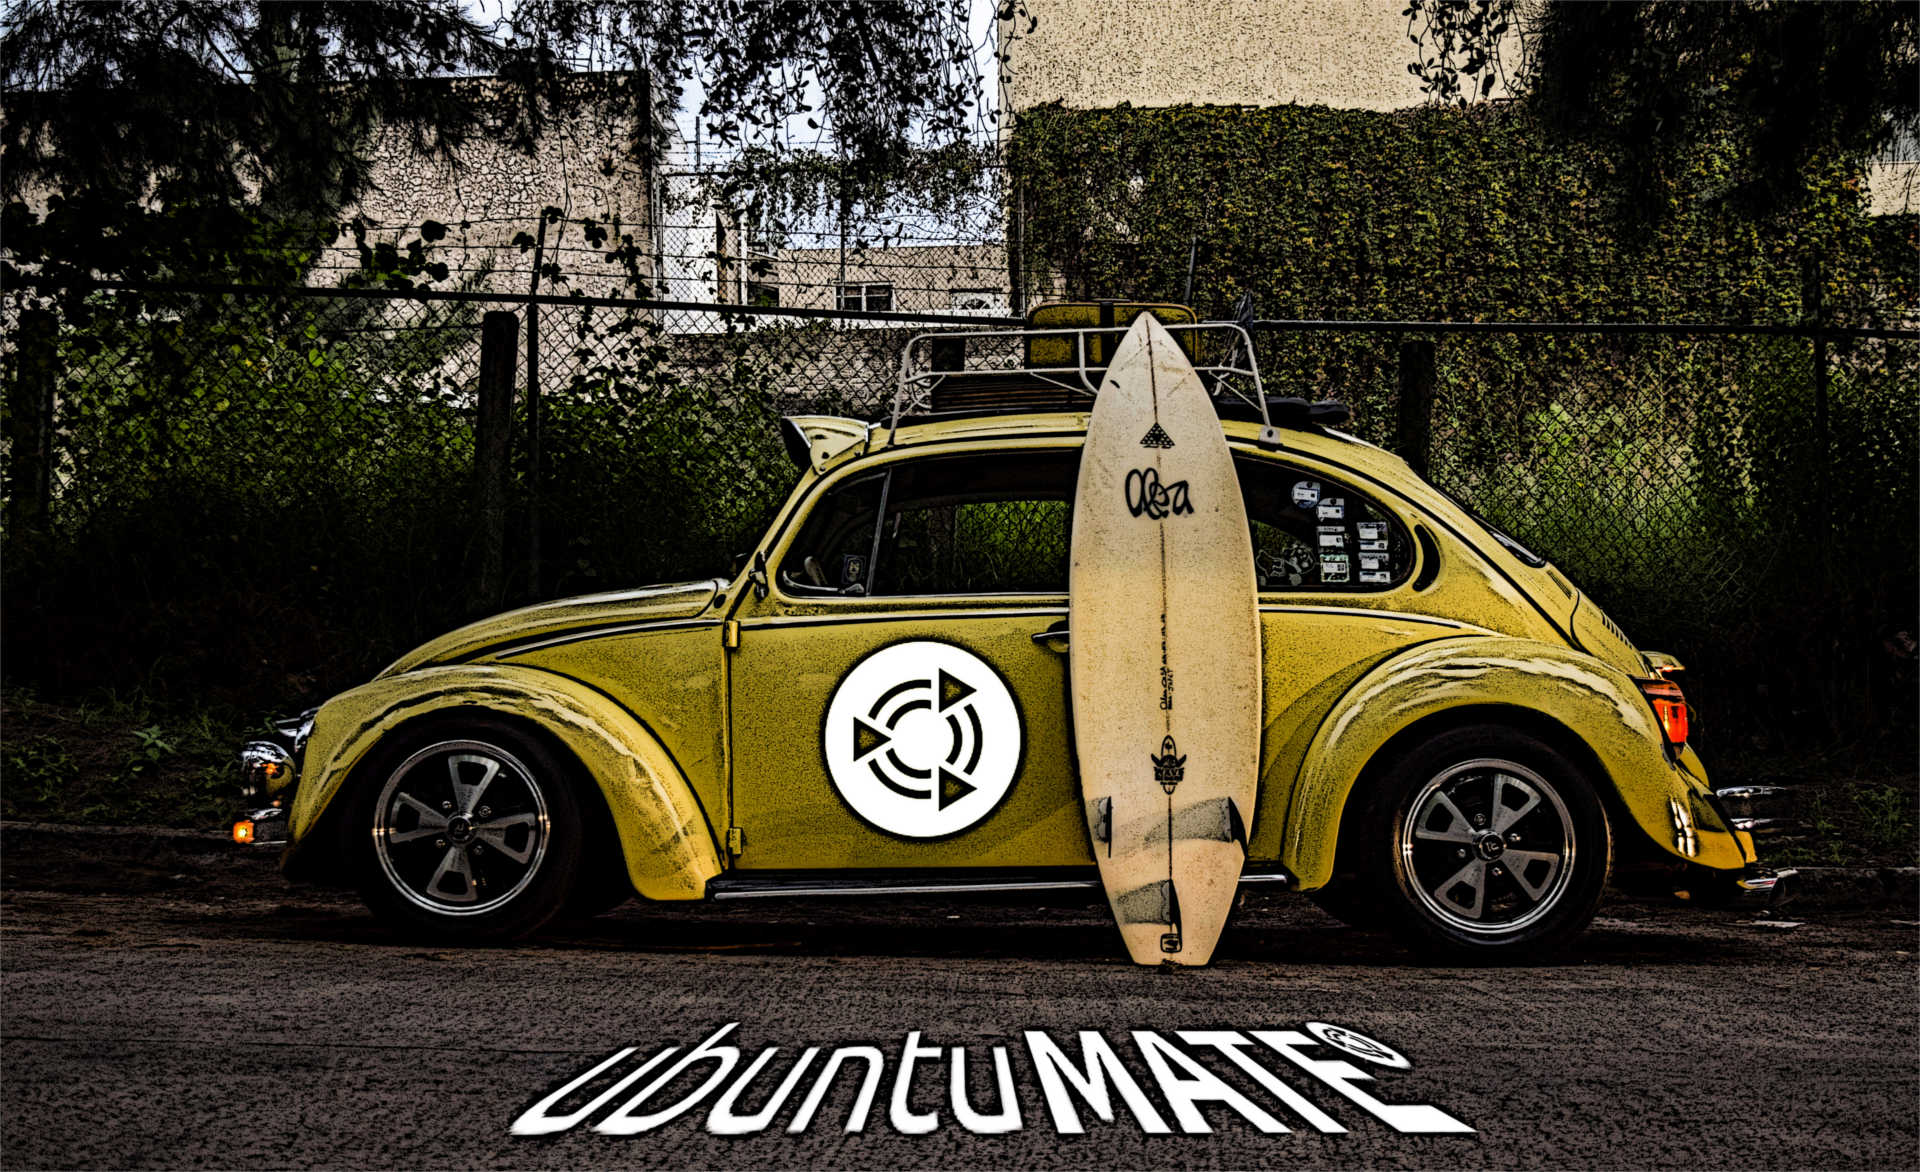 Wallpaper With Um Totem - Volkswagen Beetle , HD Wallpaper & Backgrounds